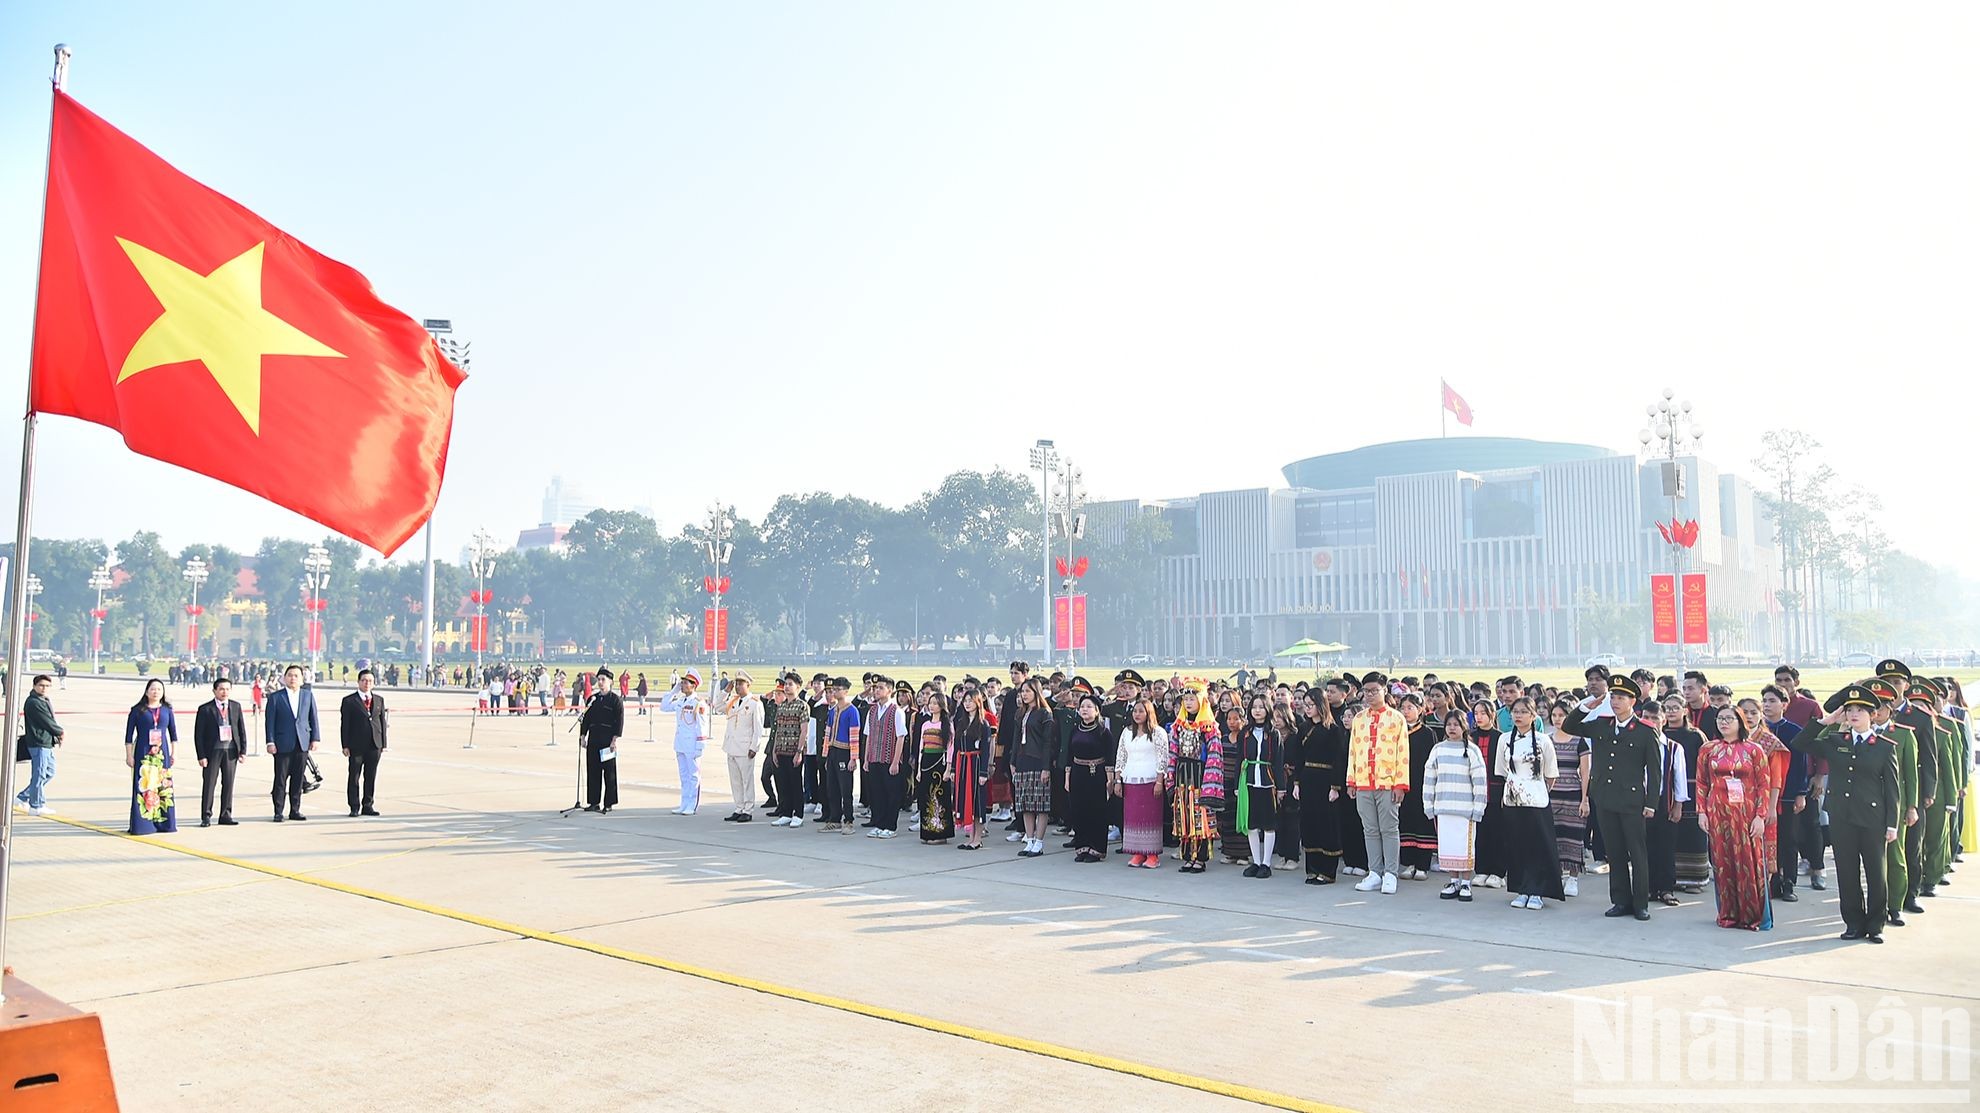 Đoàn học sinh, sinh viên, thanh niên dân tộc thiểu số xuất sắc, tiêu biểu làm lễ báo công dâng Bác trước Lăng Chủ tịch Hồ Chí Minh.